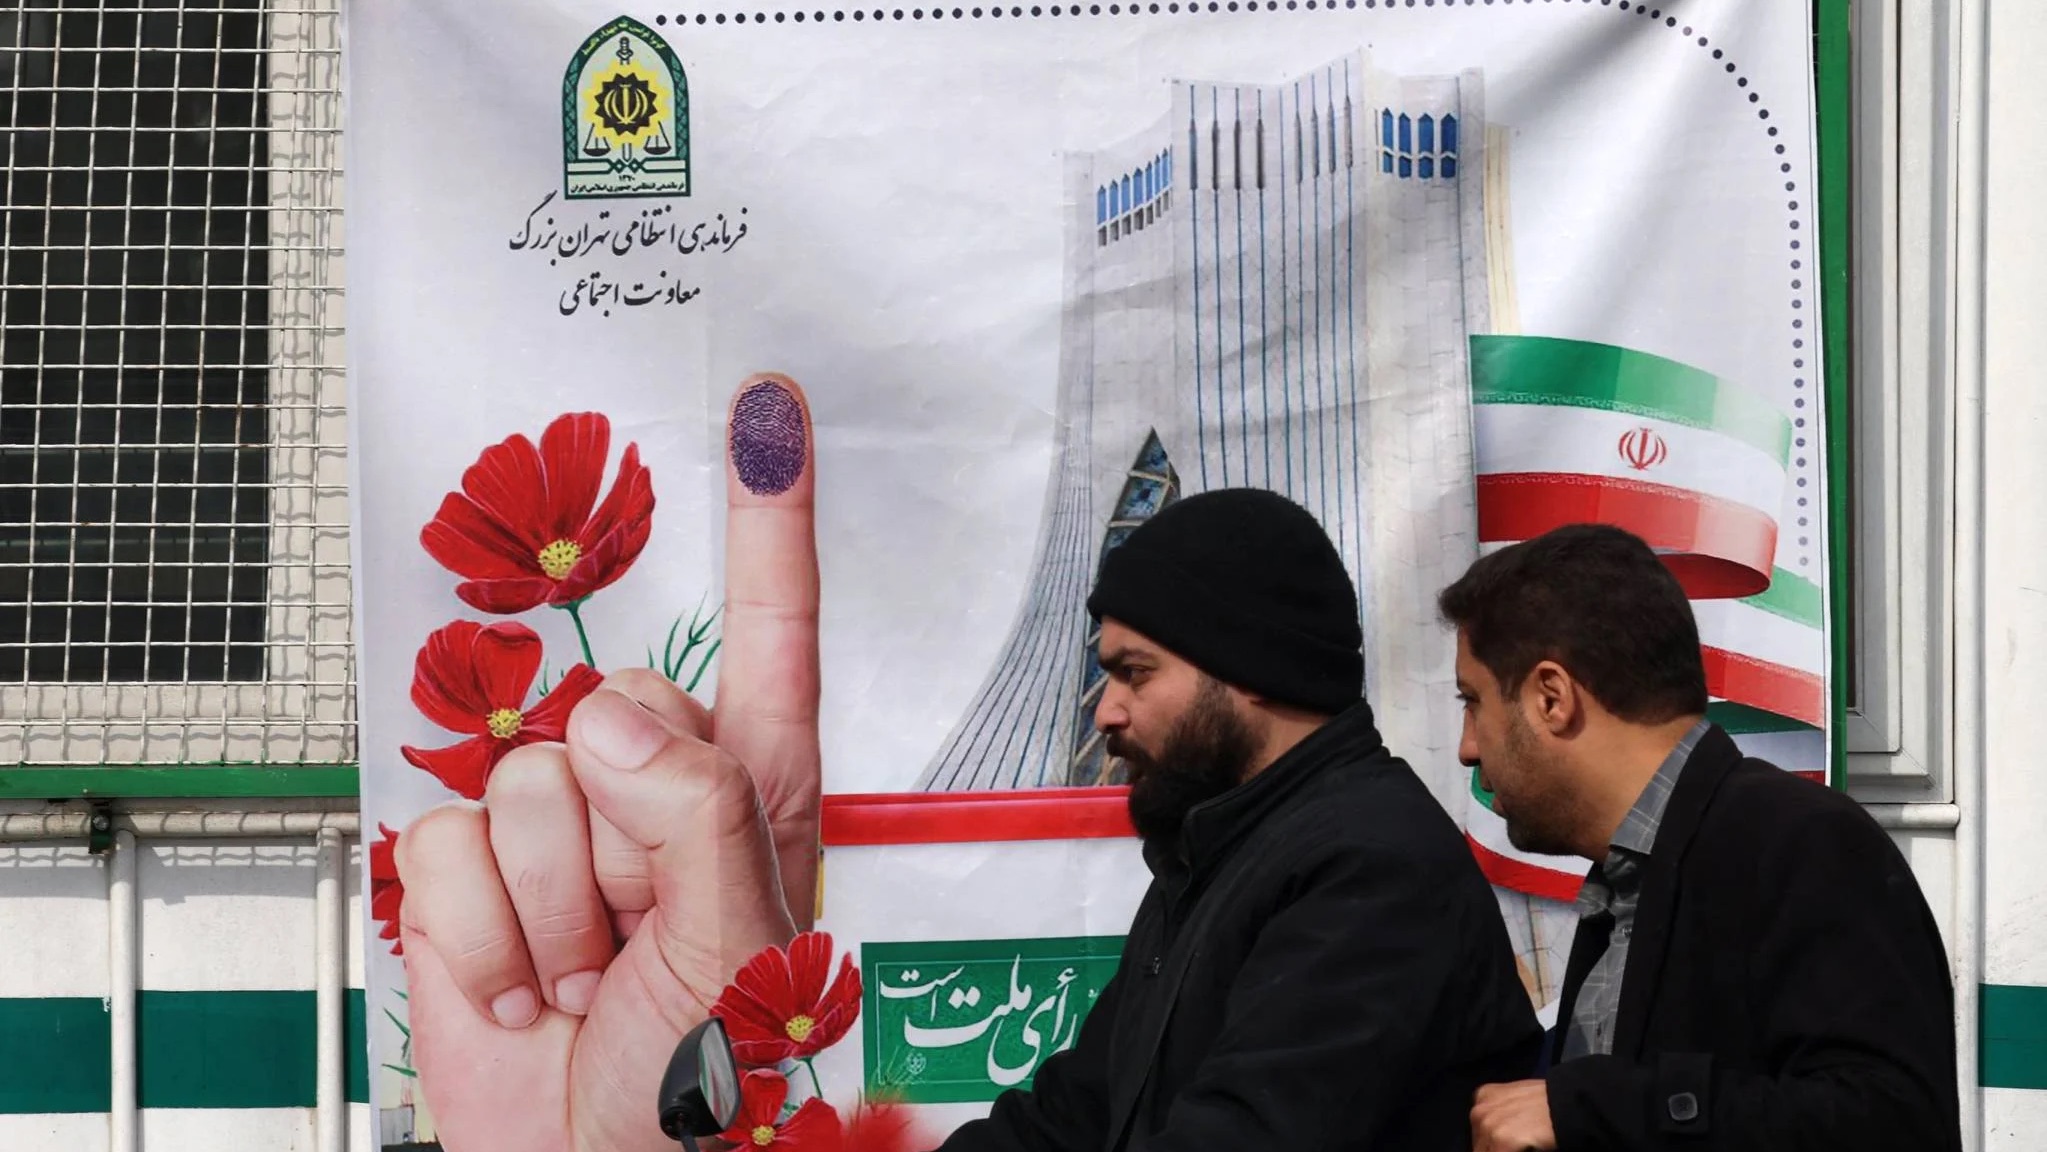 رجلان يمران في طهران بالقرب من إعلان لانتخابات منتظرة تصاحبها الكثير من الإشكاليات المتعلقة بالنزاهة